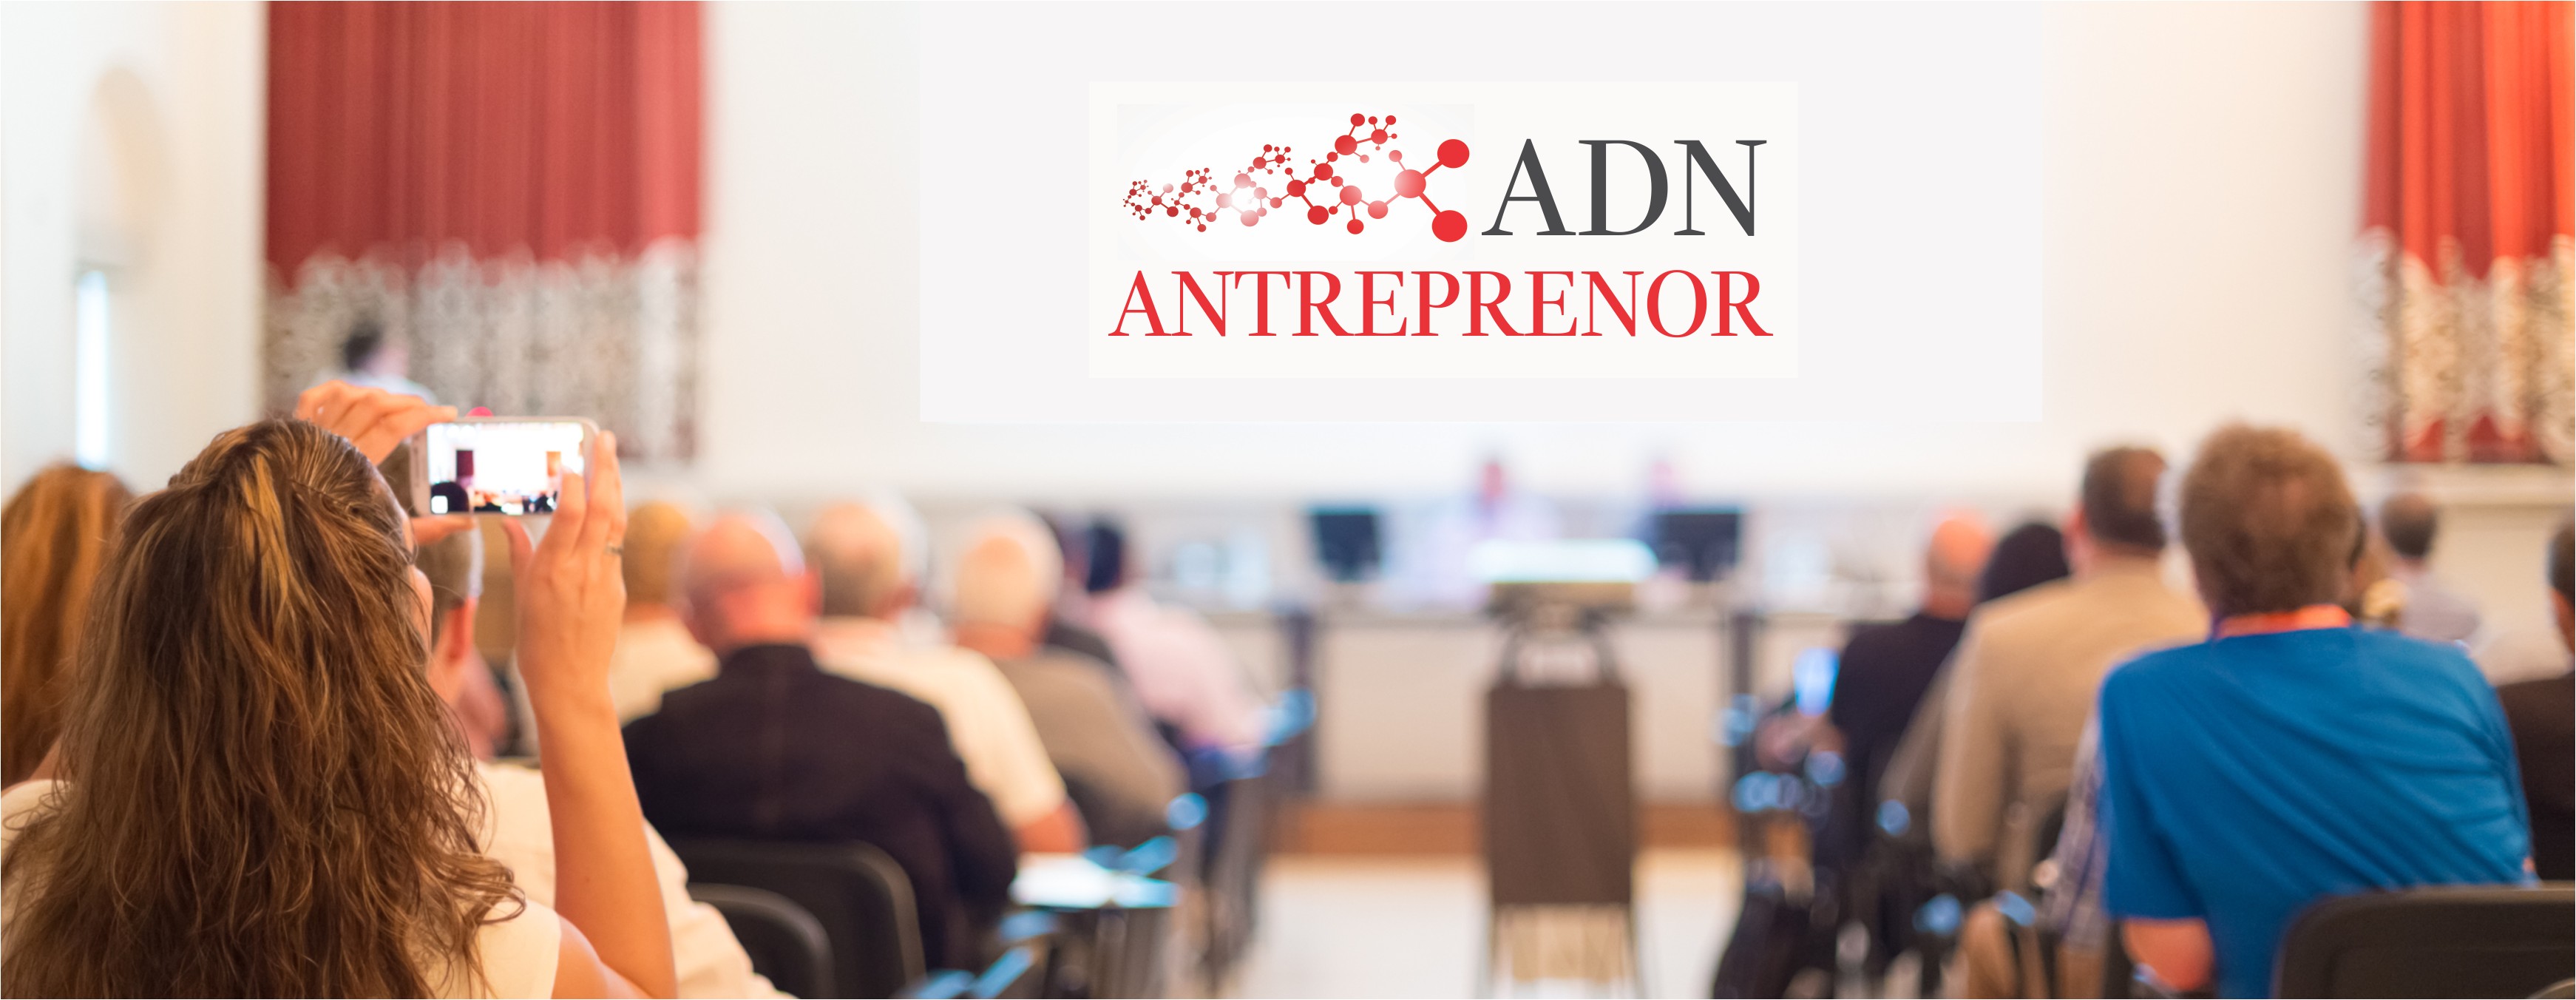 Antreprenorii îşi dau întâlnire pe 15 martie la conferinţa ADN Antreprenor